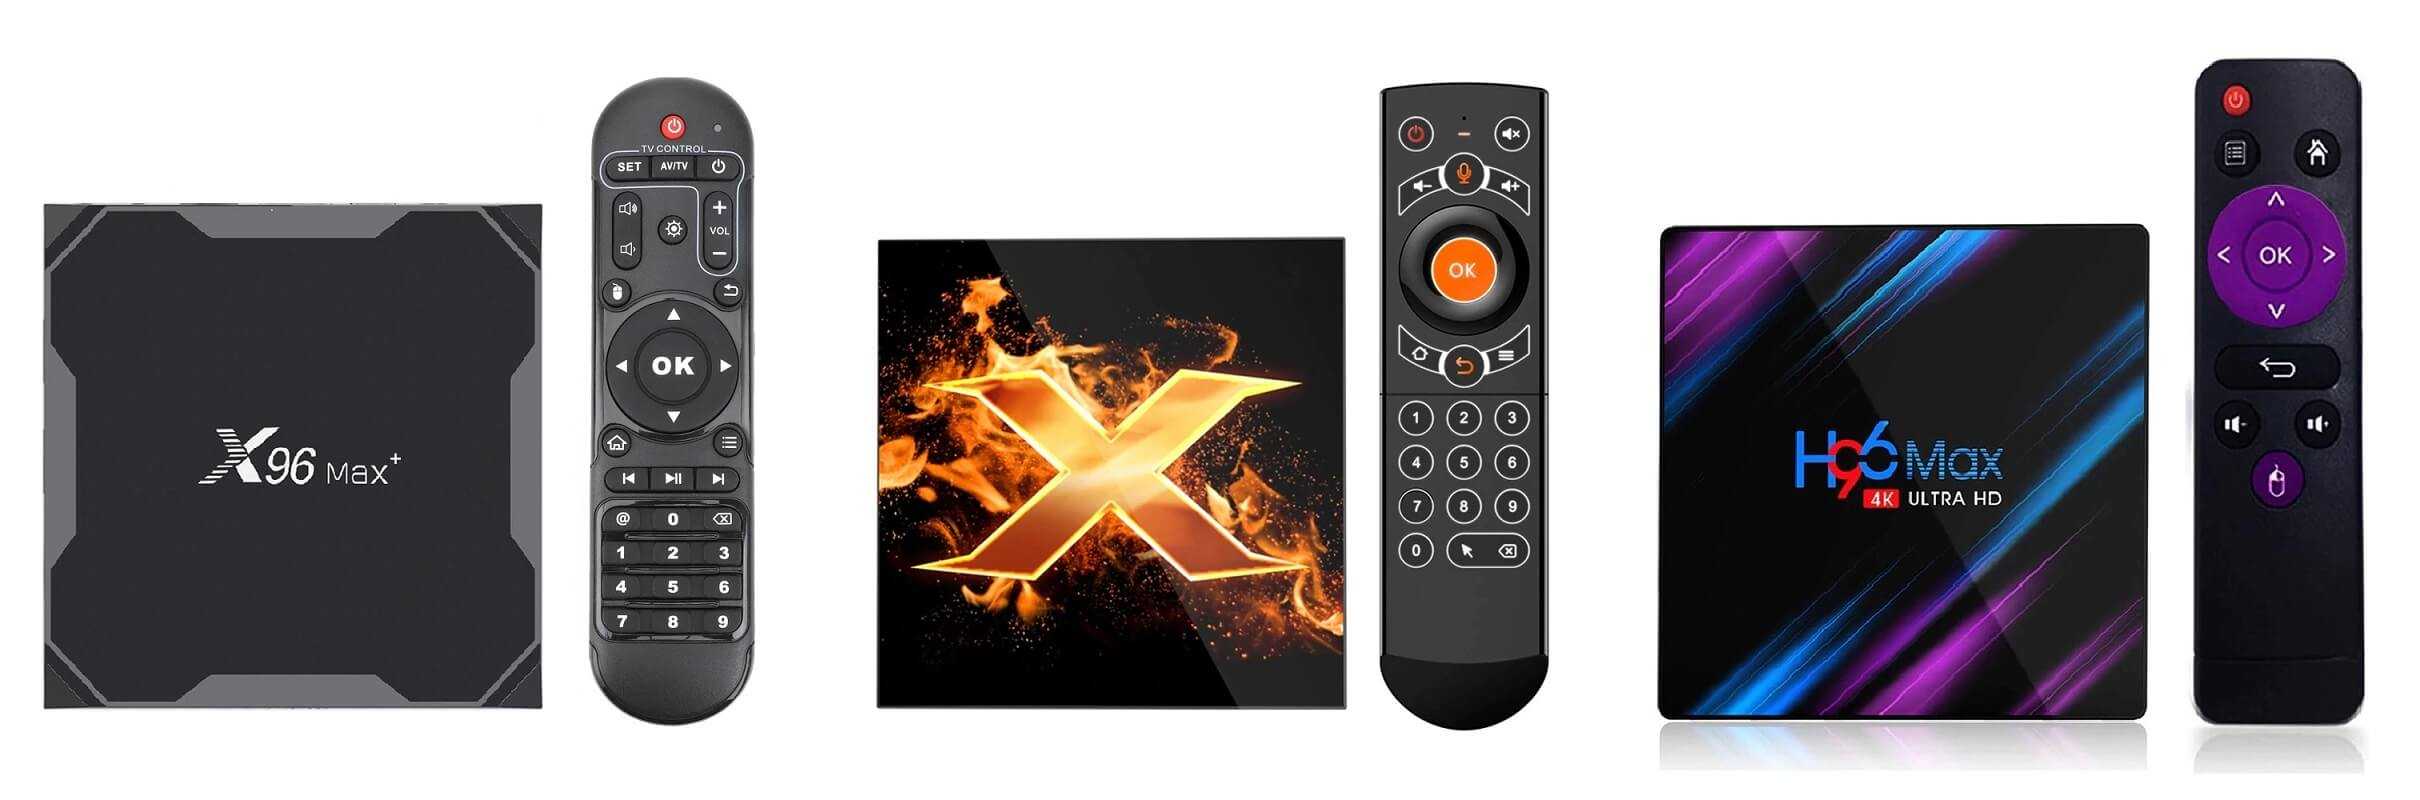 Tv box с поддержкой 4k hdr — какой выбрать?|видеотехника